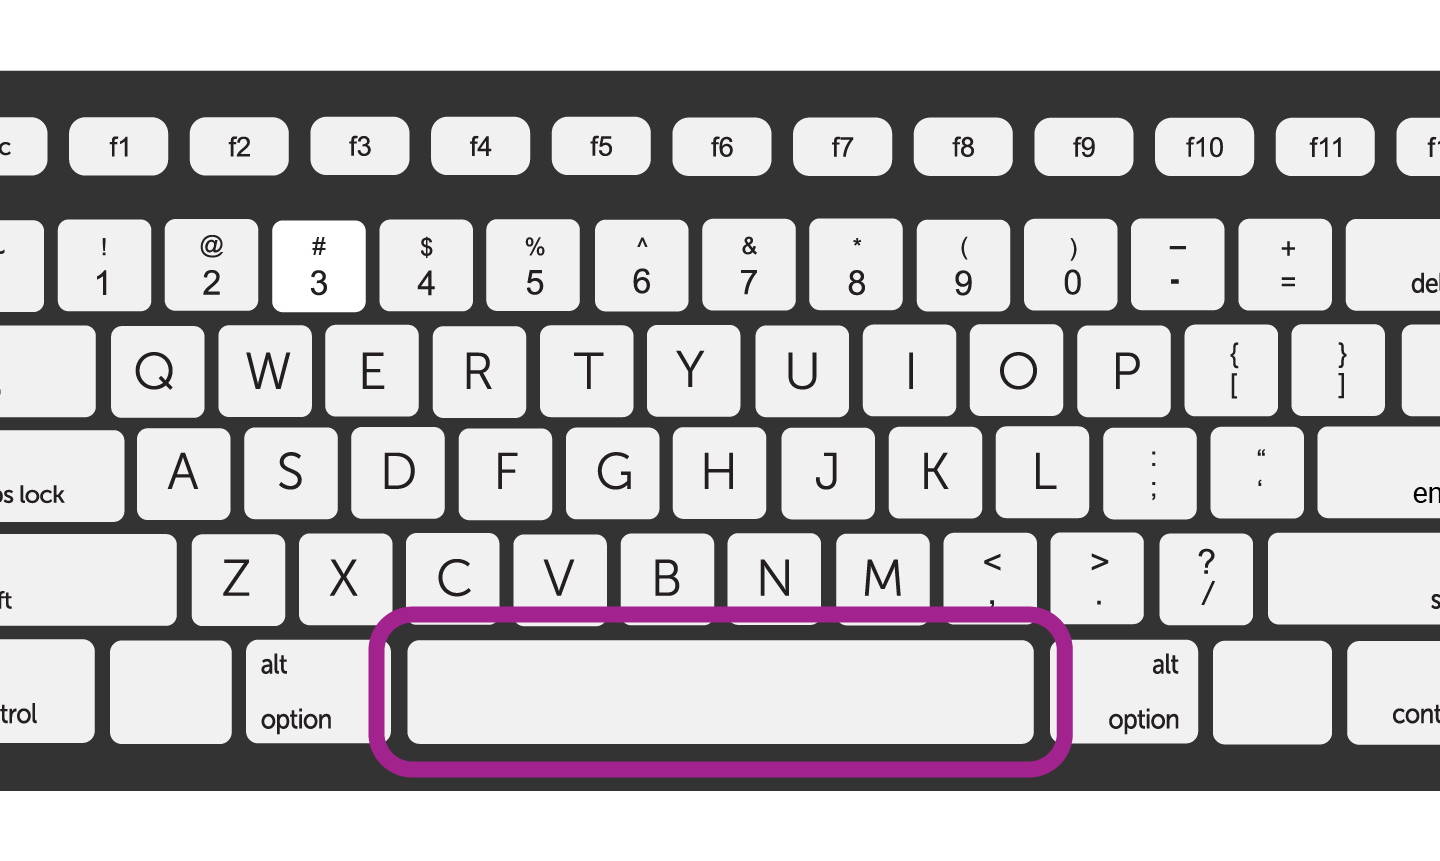 Un teclado típico con la barra espaciadora (Spacebar) resaltada